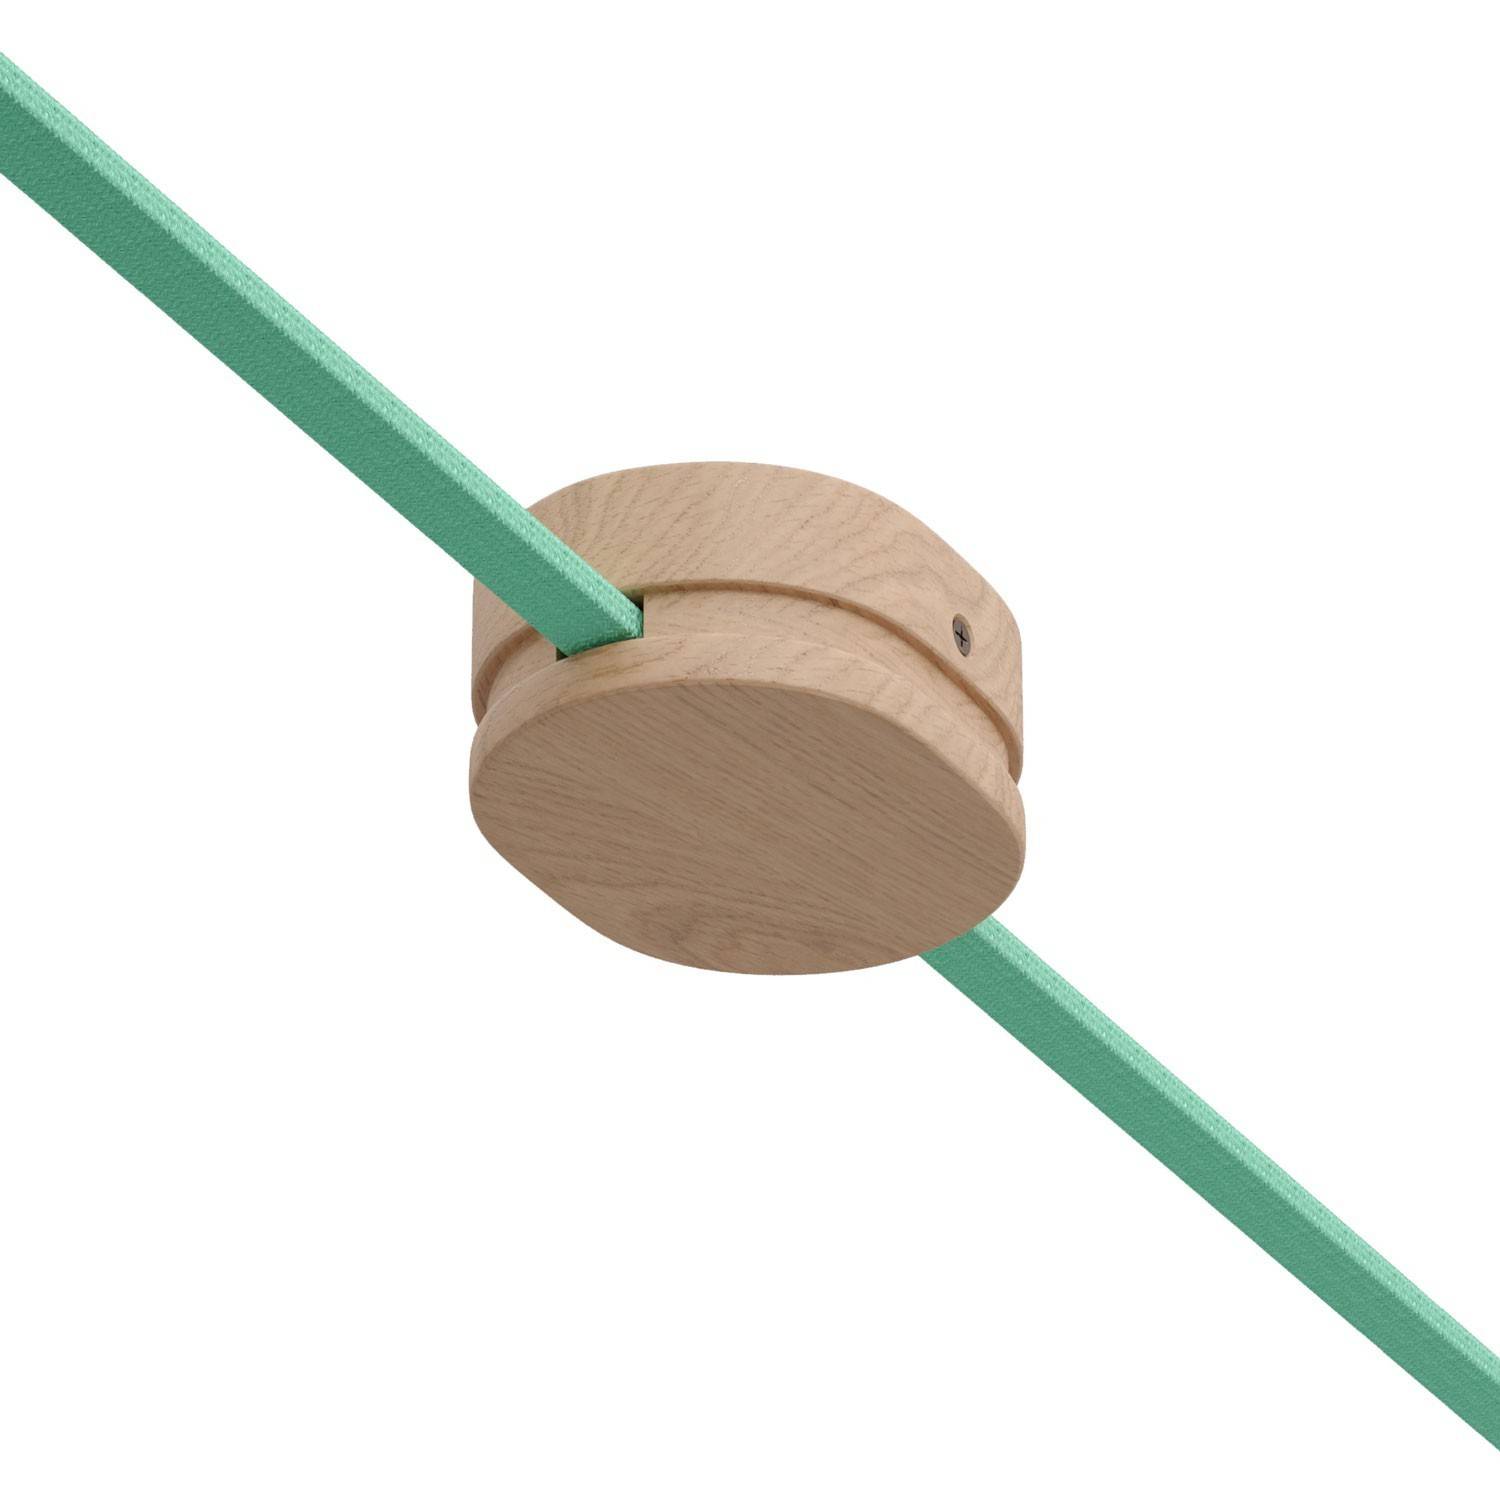 Ovalni drveni baldahin s 2 bočne rupe za kabel svjetiljke i Filé sustav. Napravljen u Italiji